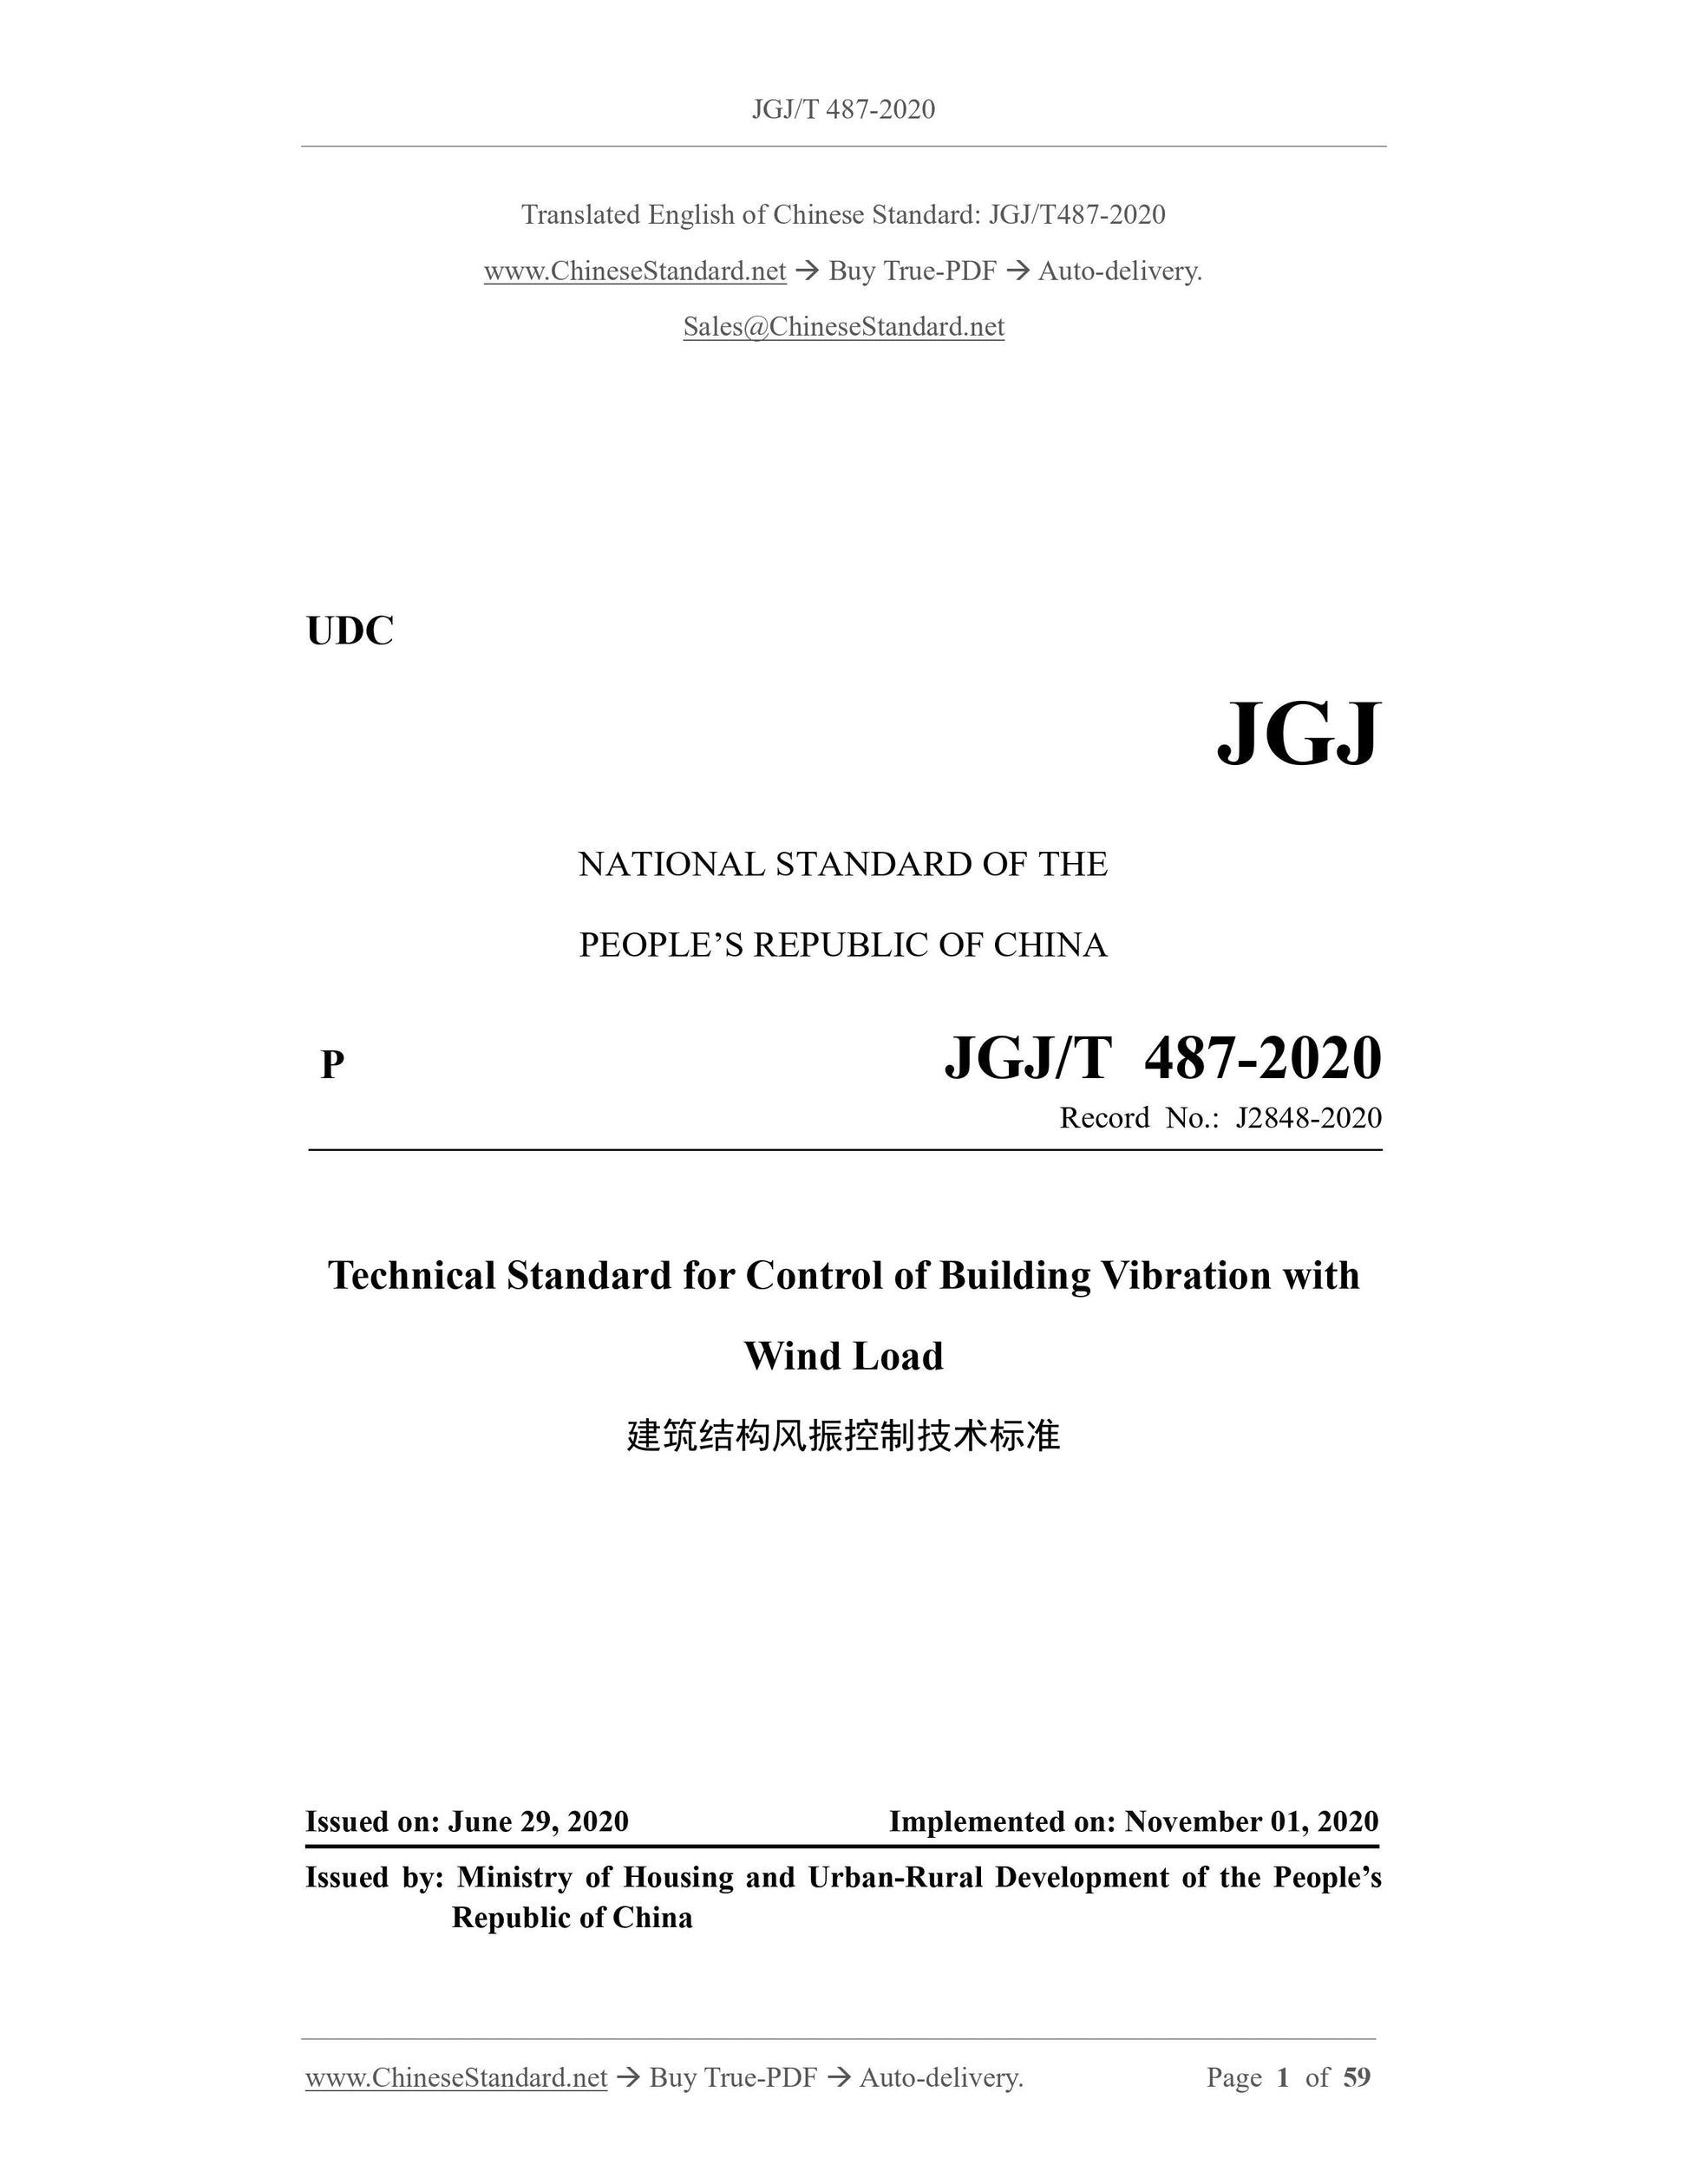 JGJ/T 487-2020 Page 1